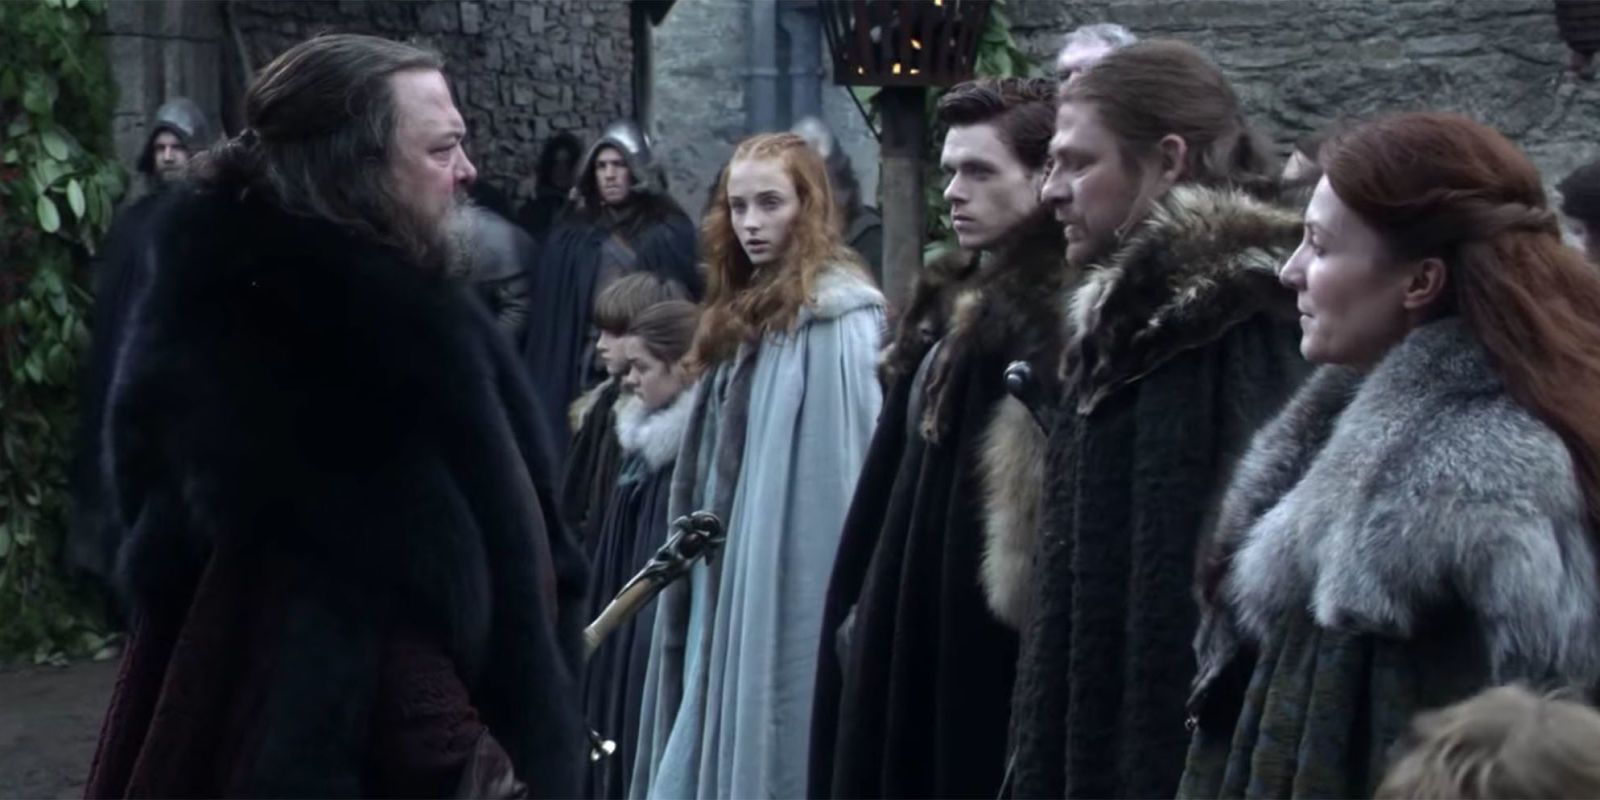 Game of Thrones Stark family